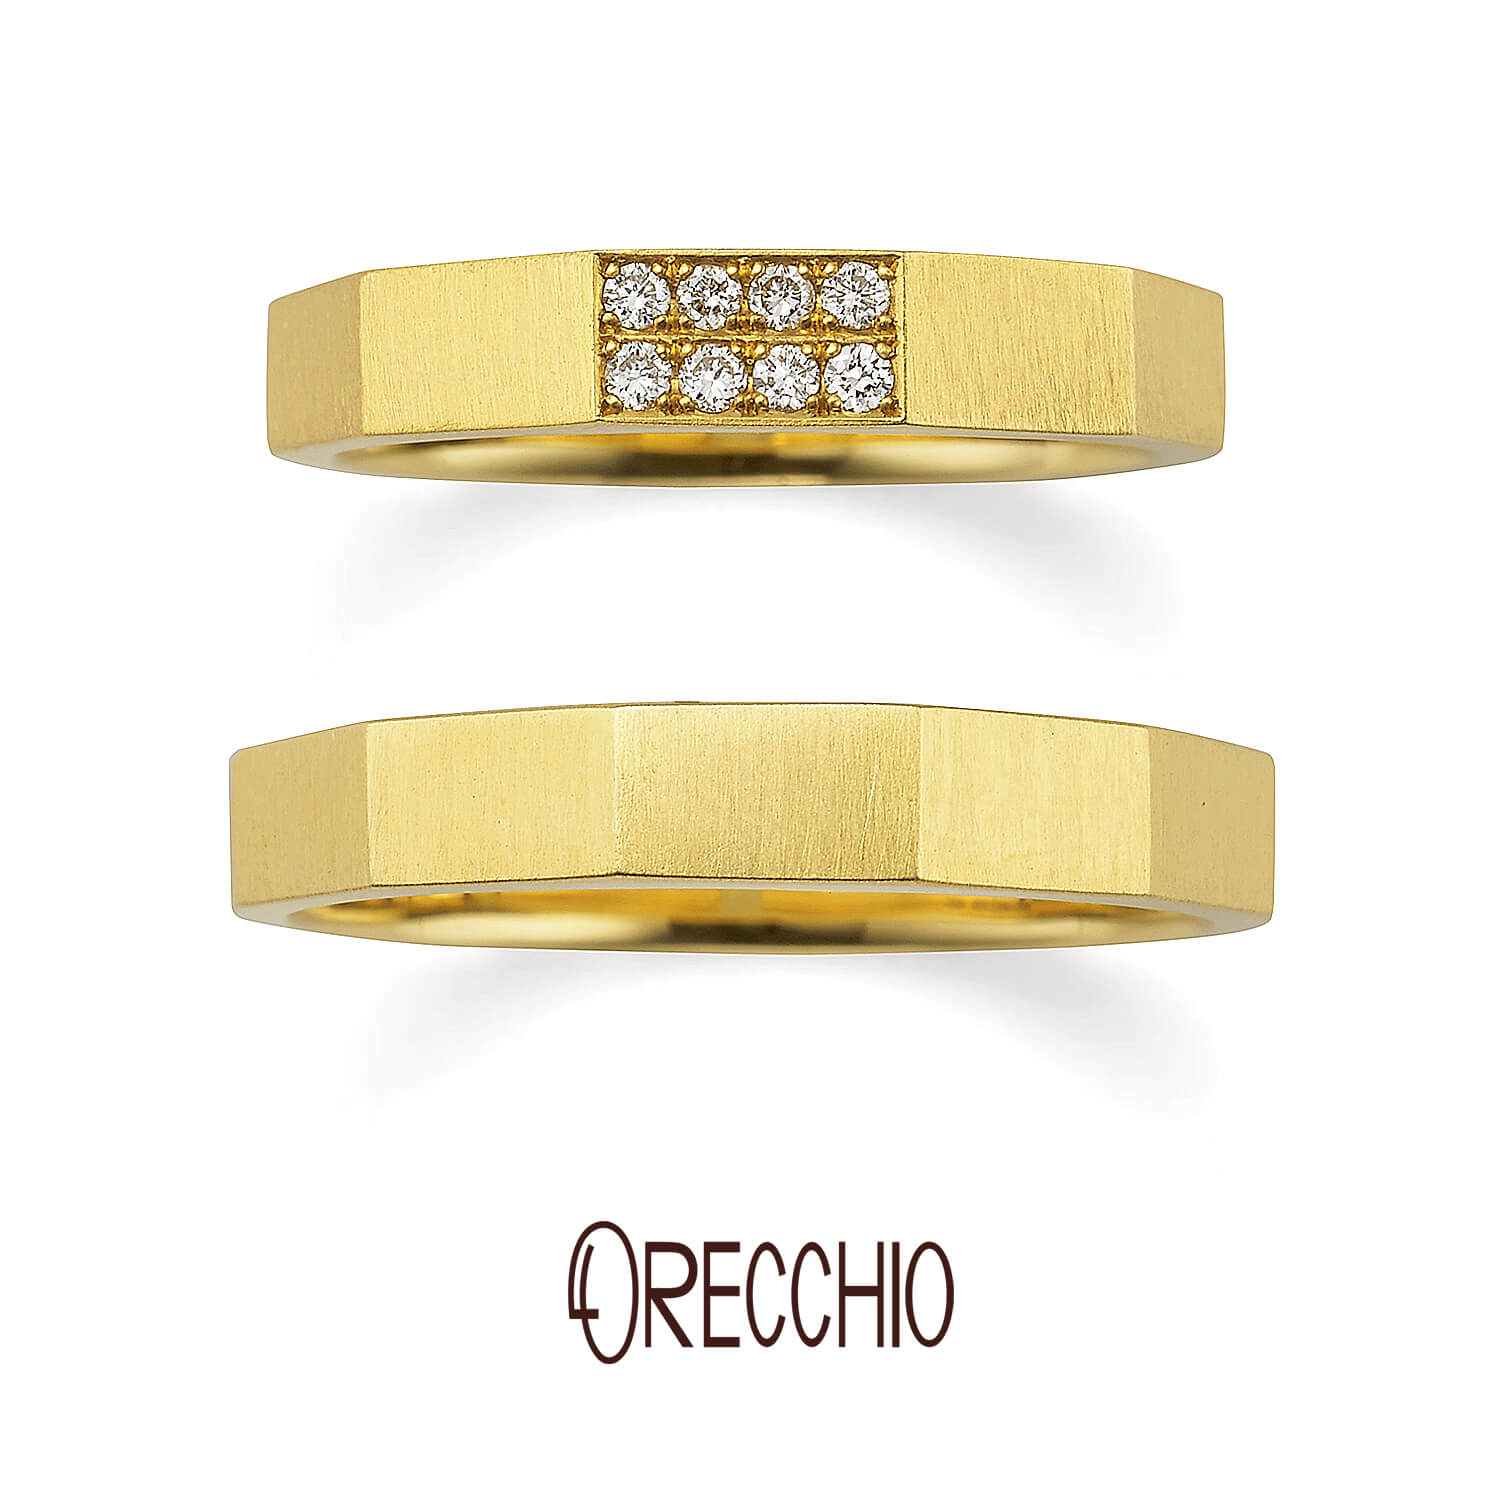 ORECCHIOオレッキオの結婚指輪safariサファリFM-2206とFM-2205